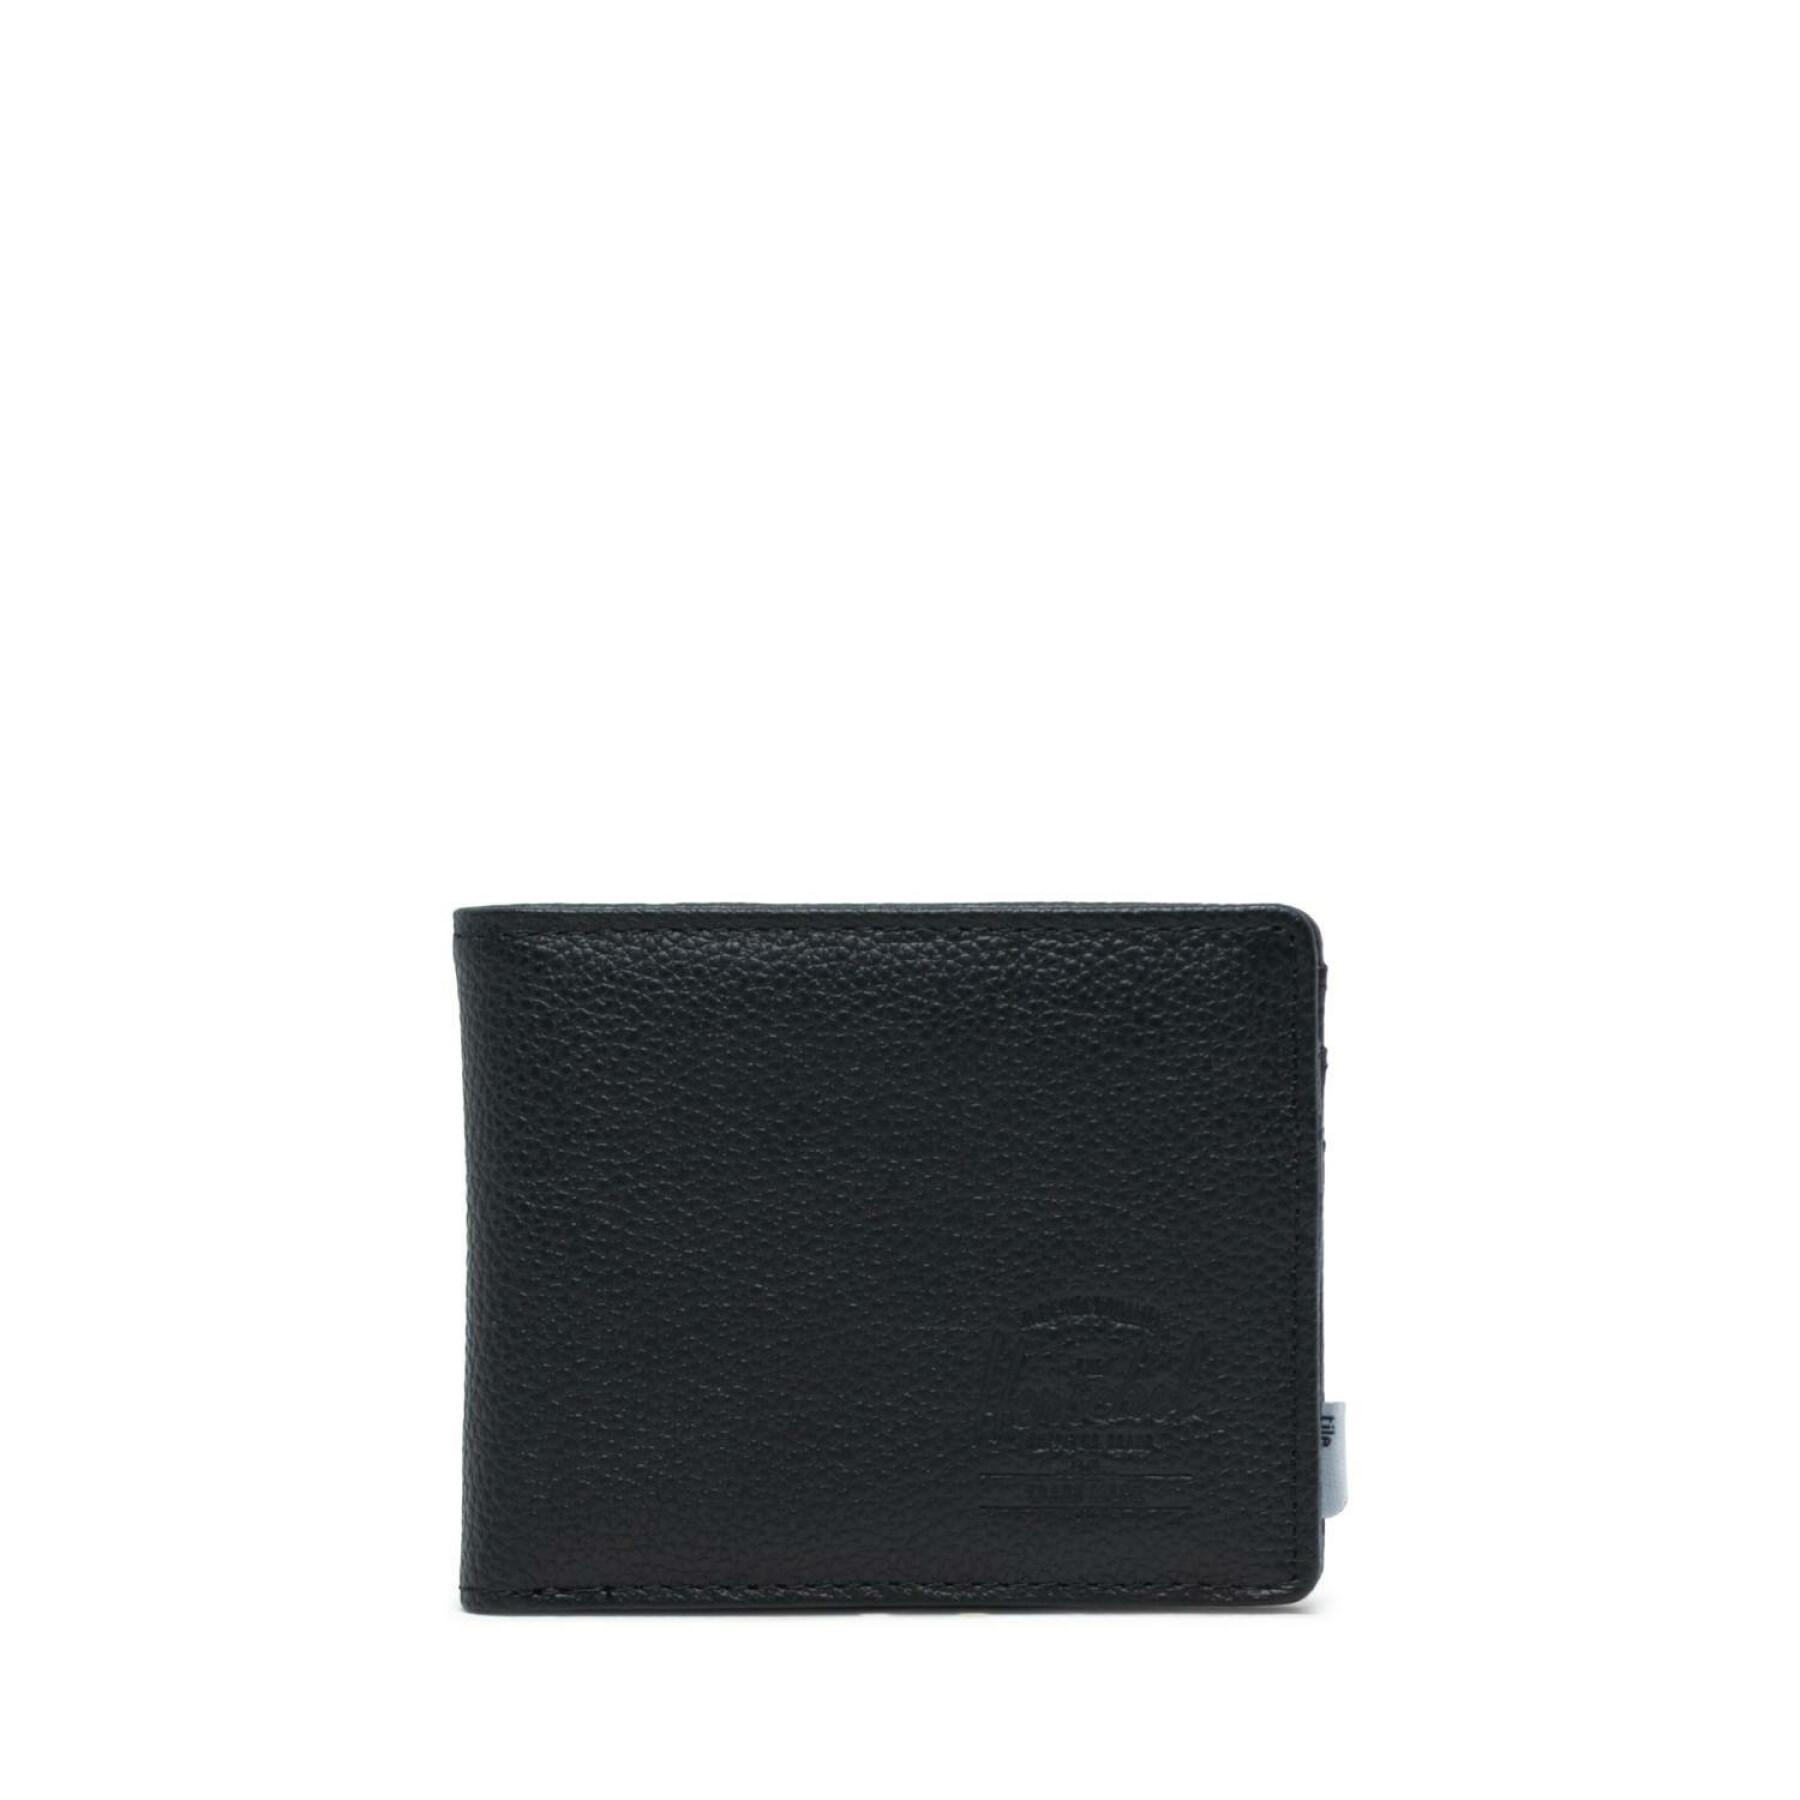 Portfolio Herschel black pebbled leather